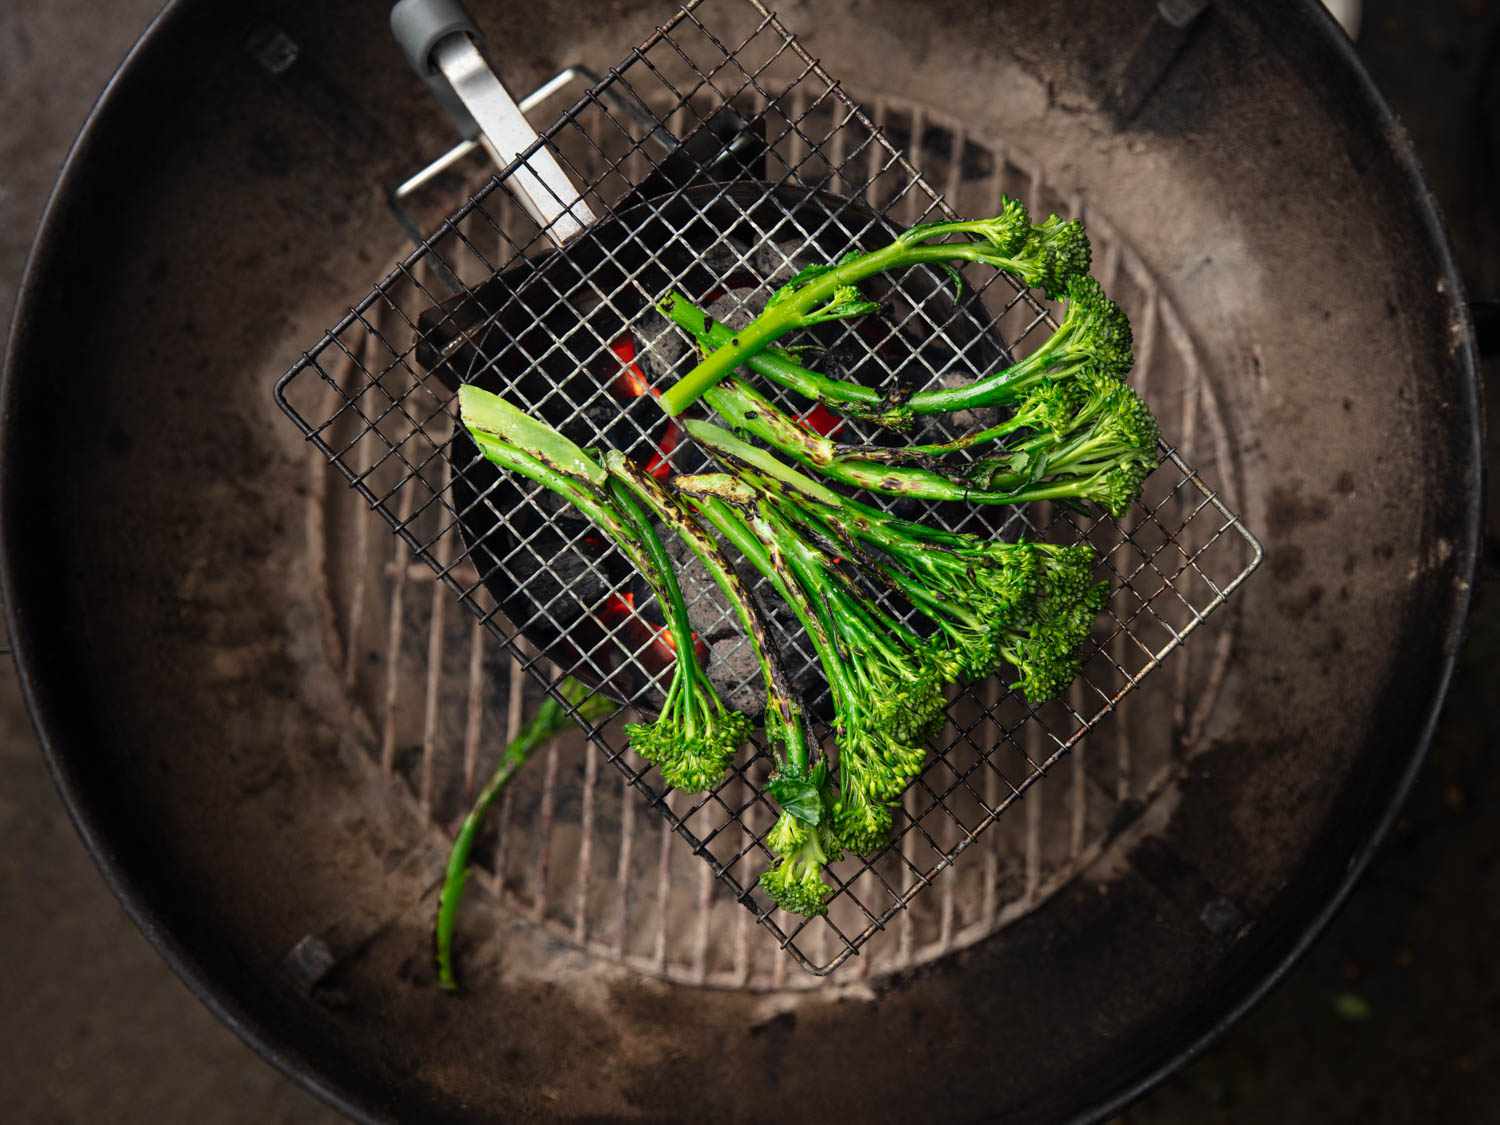 20190619 -木炭烟囱——烤蔬菜-维姬-沃斯克- 5所示